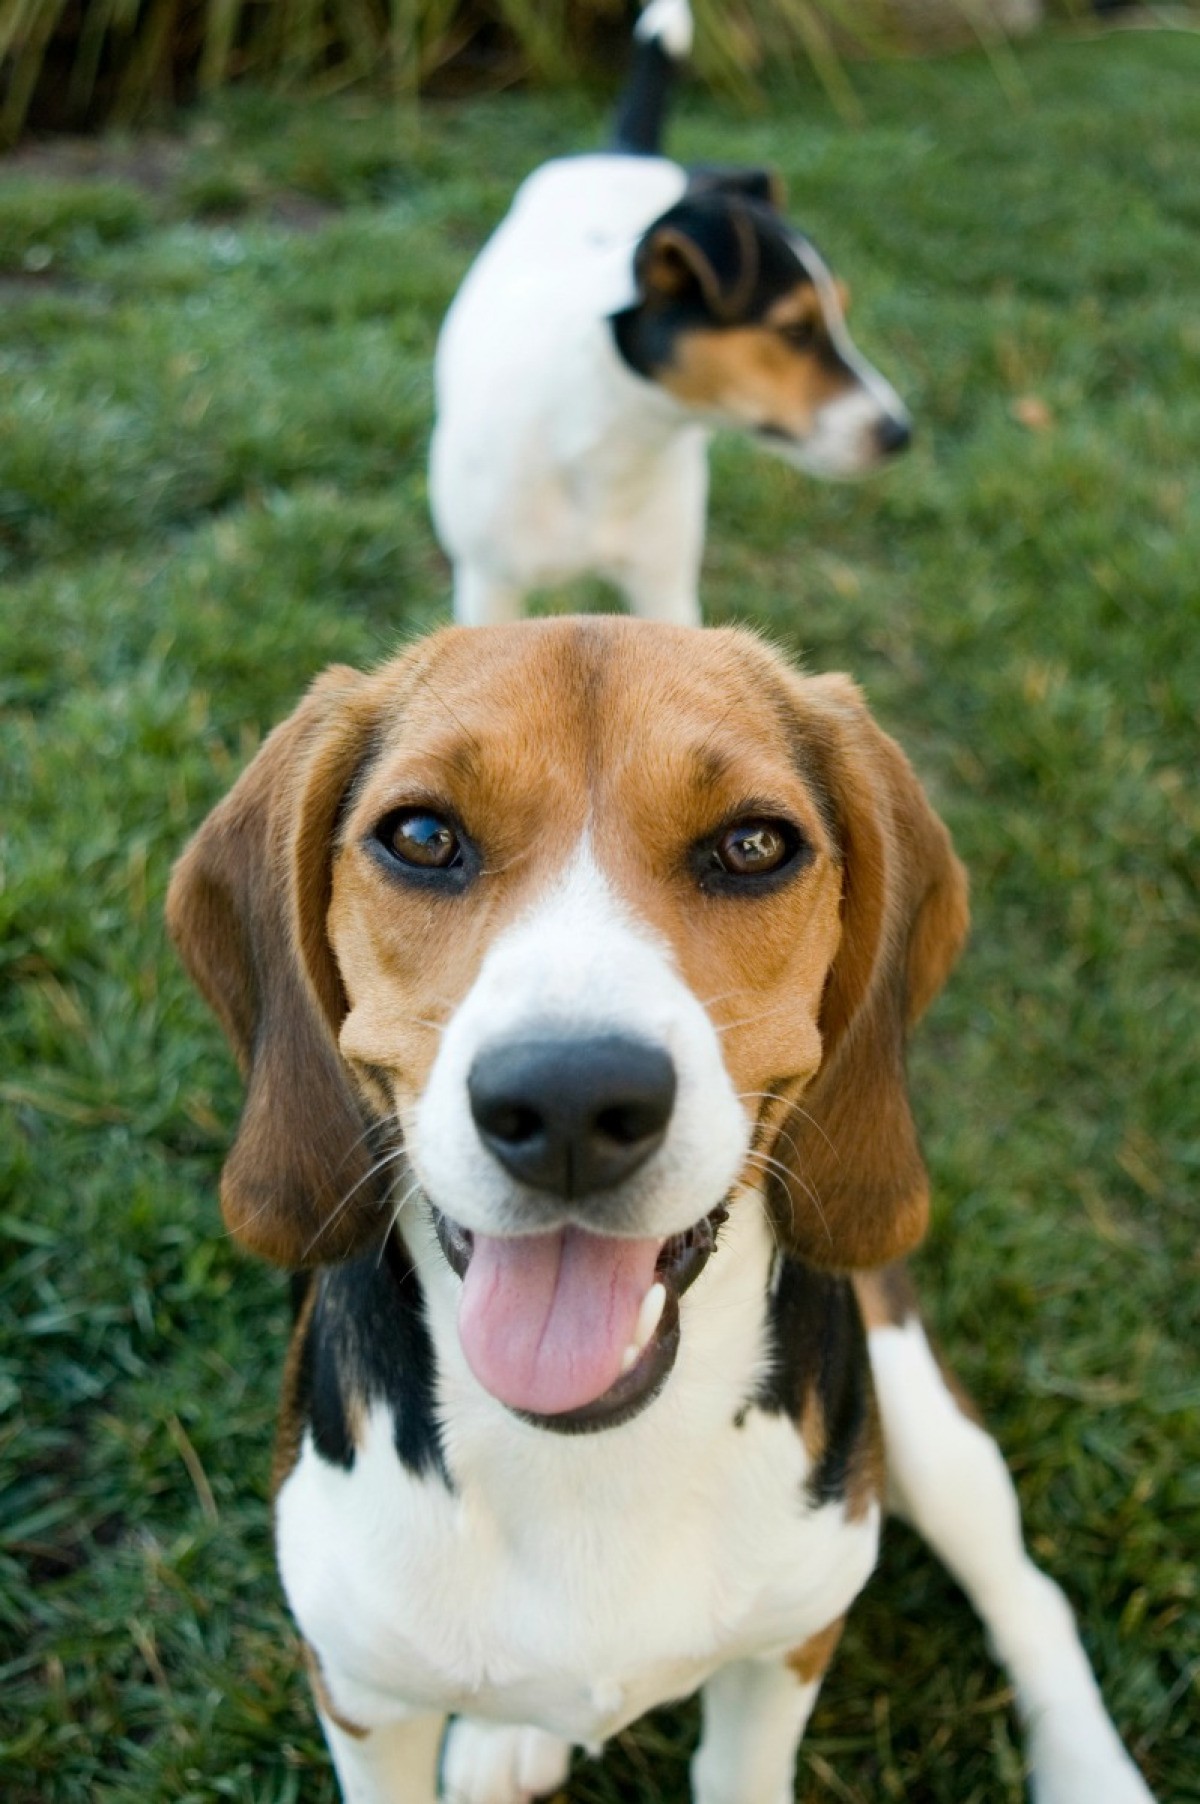 Beagle/Jack Russell Mix Photos ThriftyFun